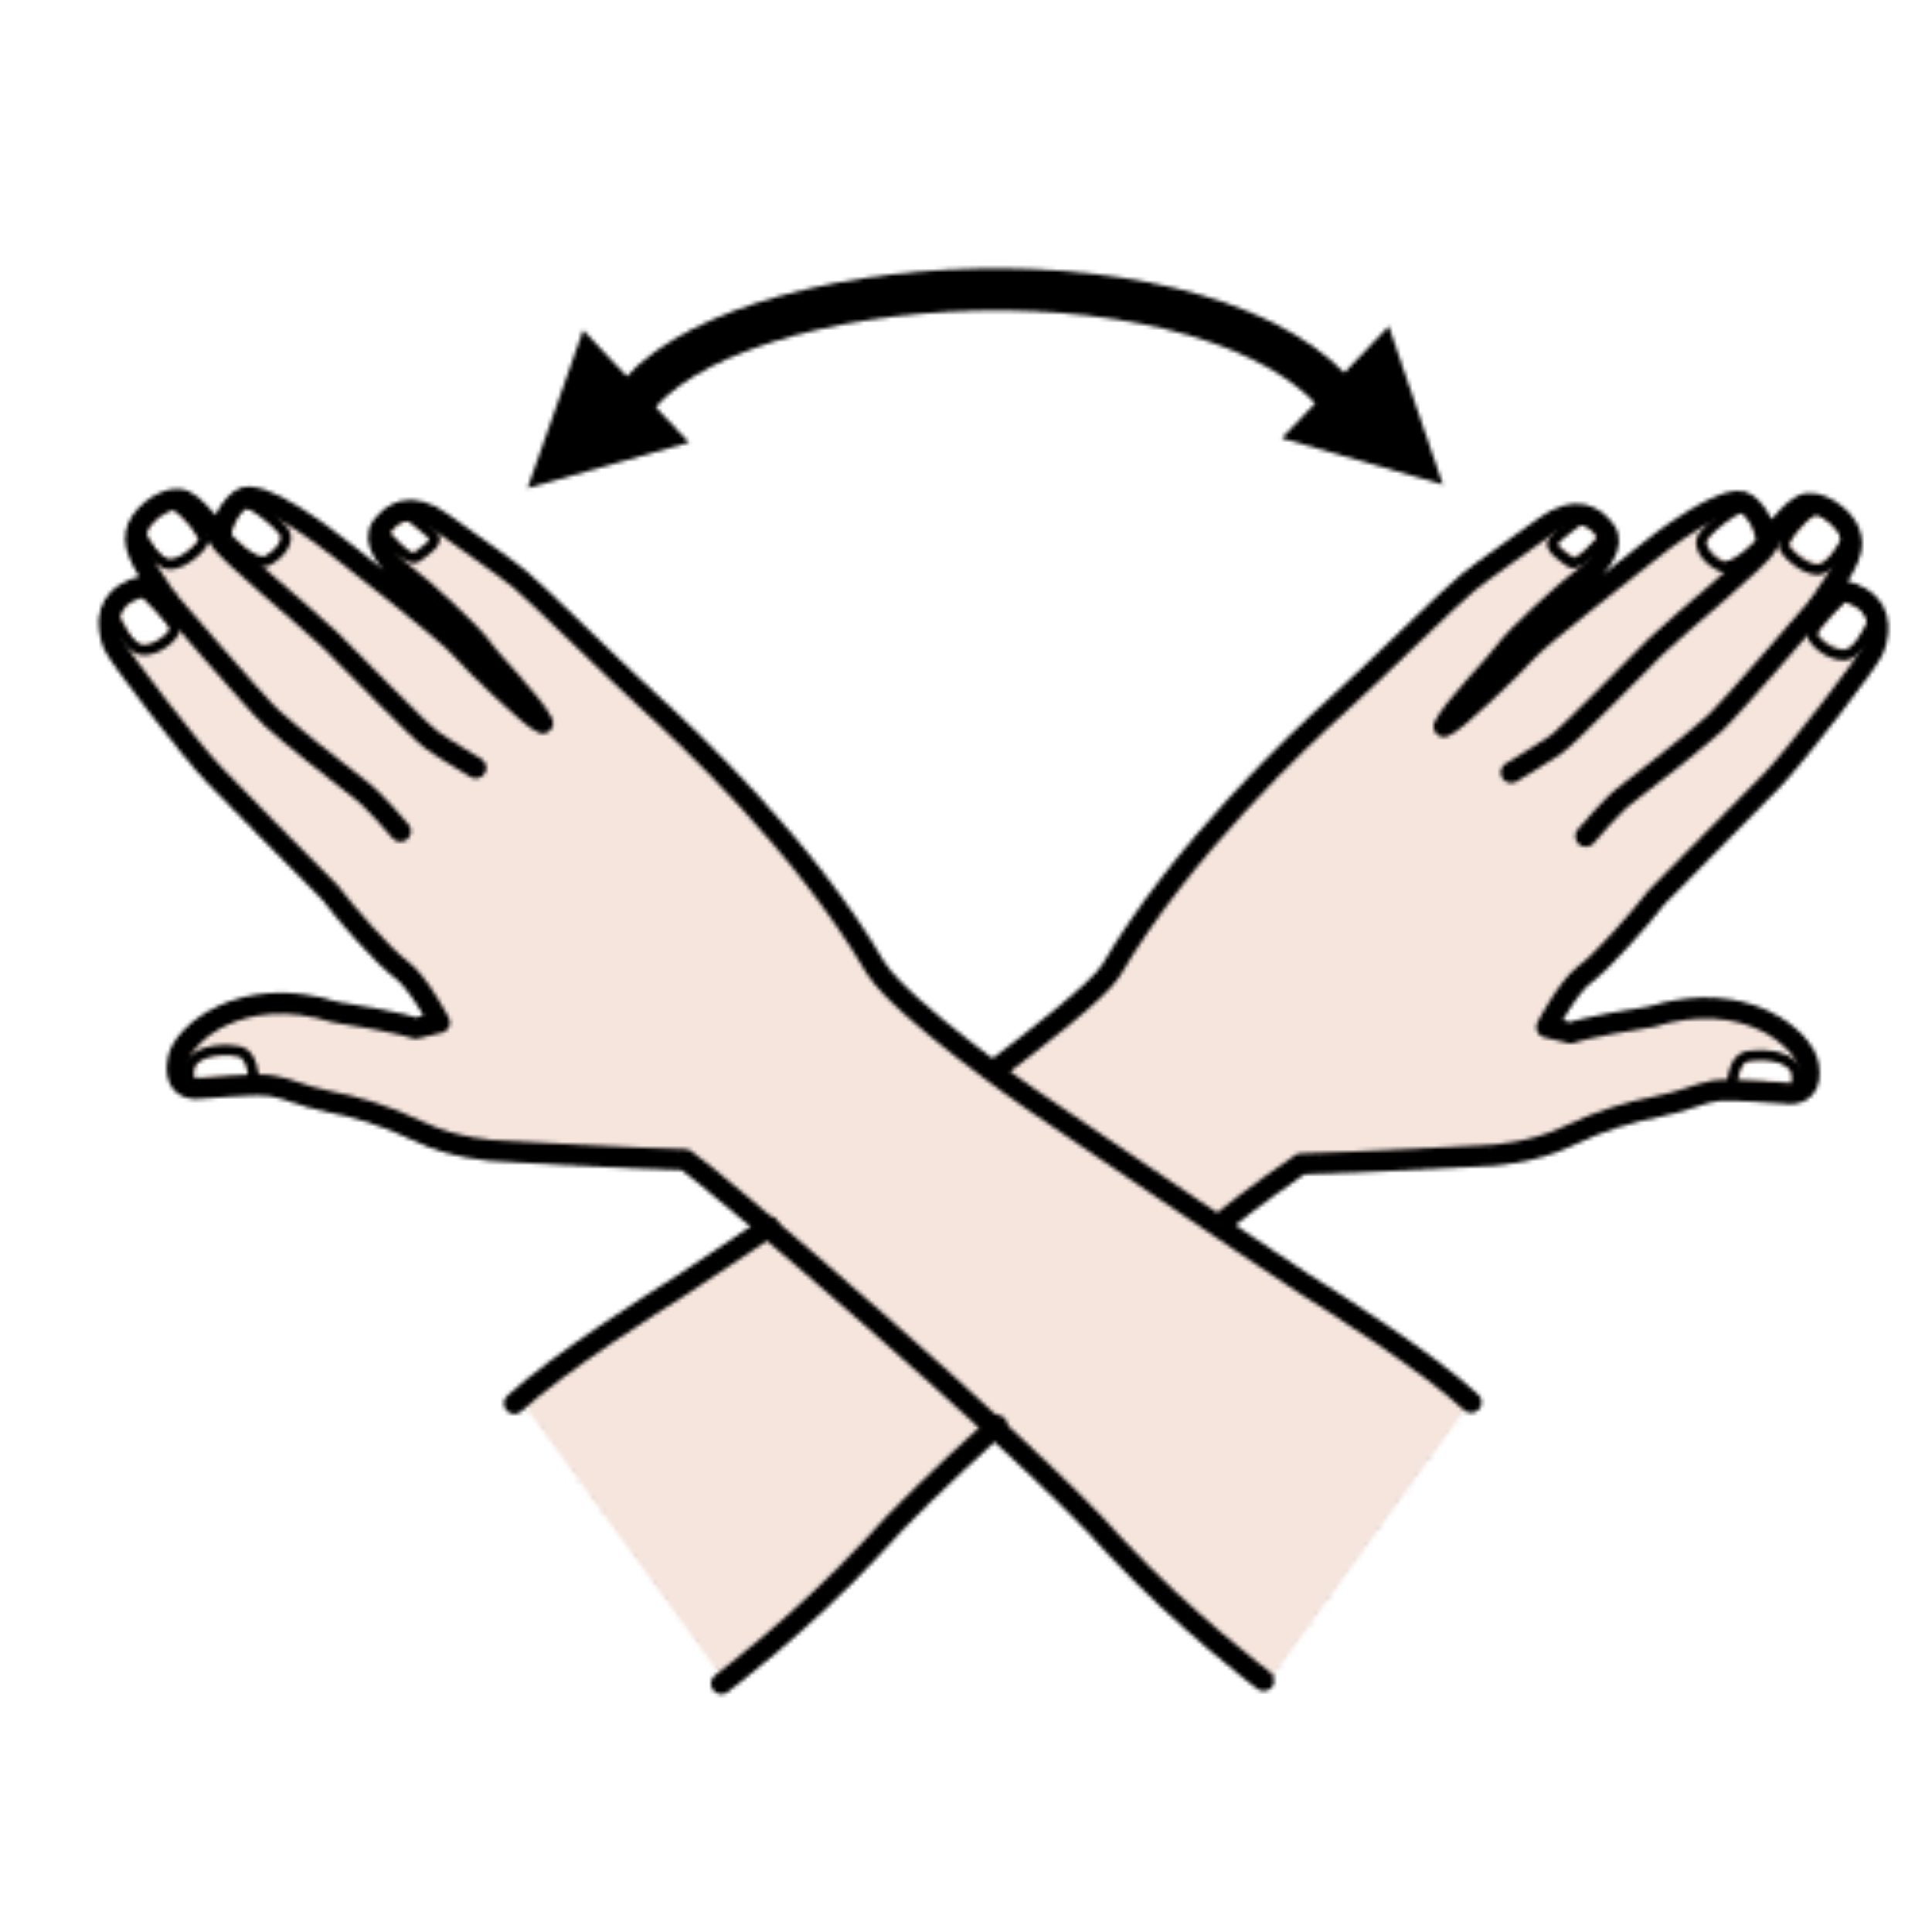 La imagen muestra un par de brazos cruzándose, haciendo el gesto de terminar